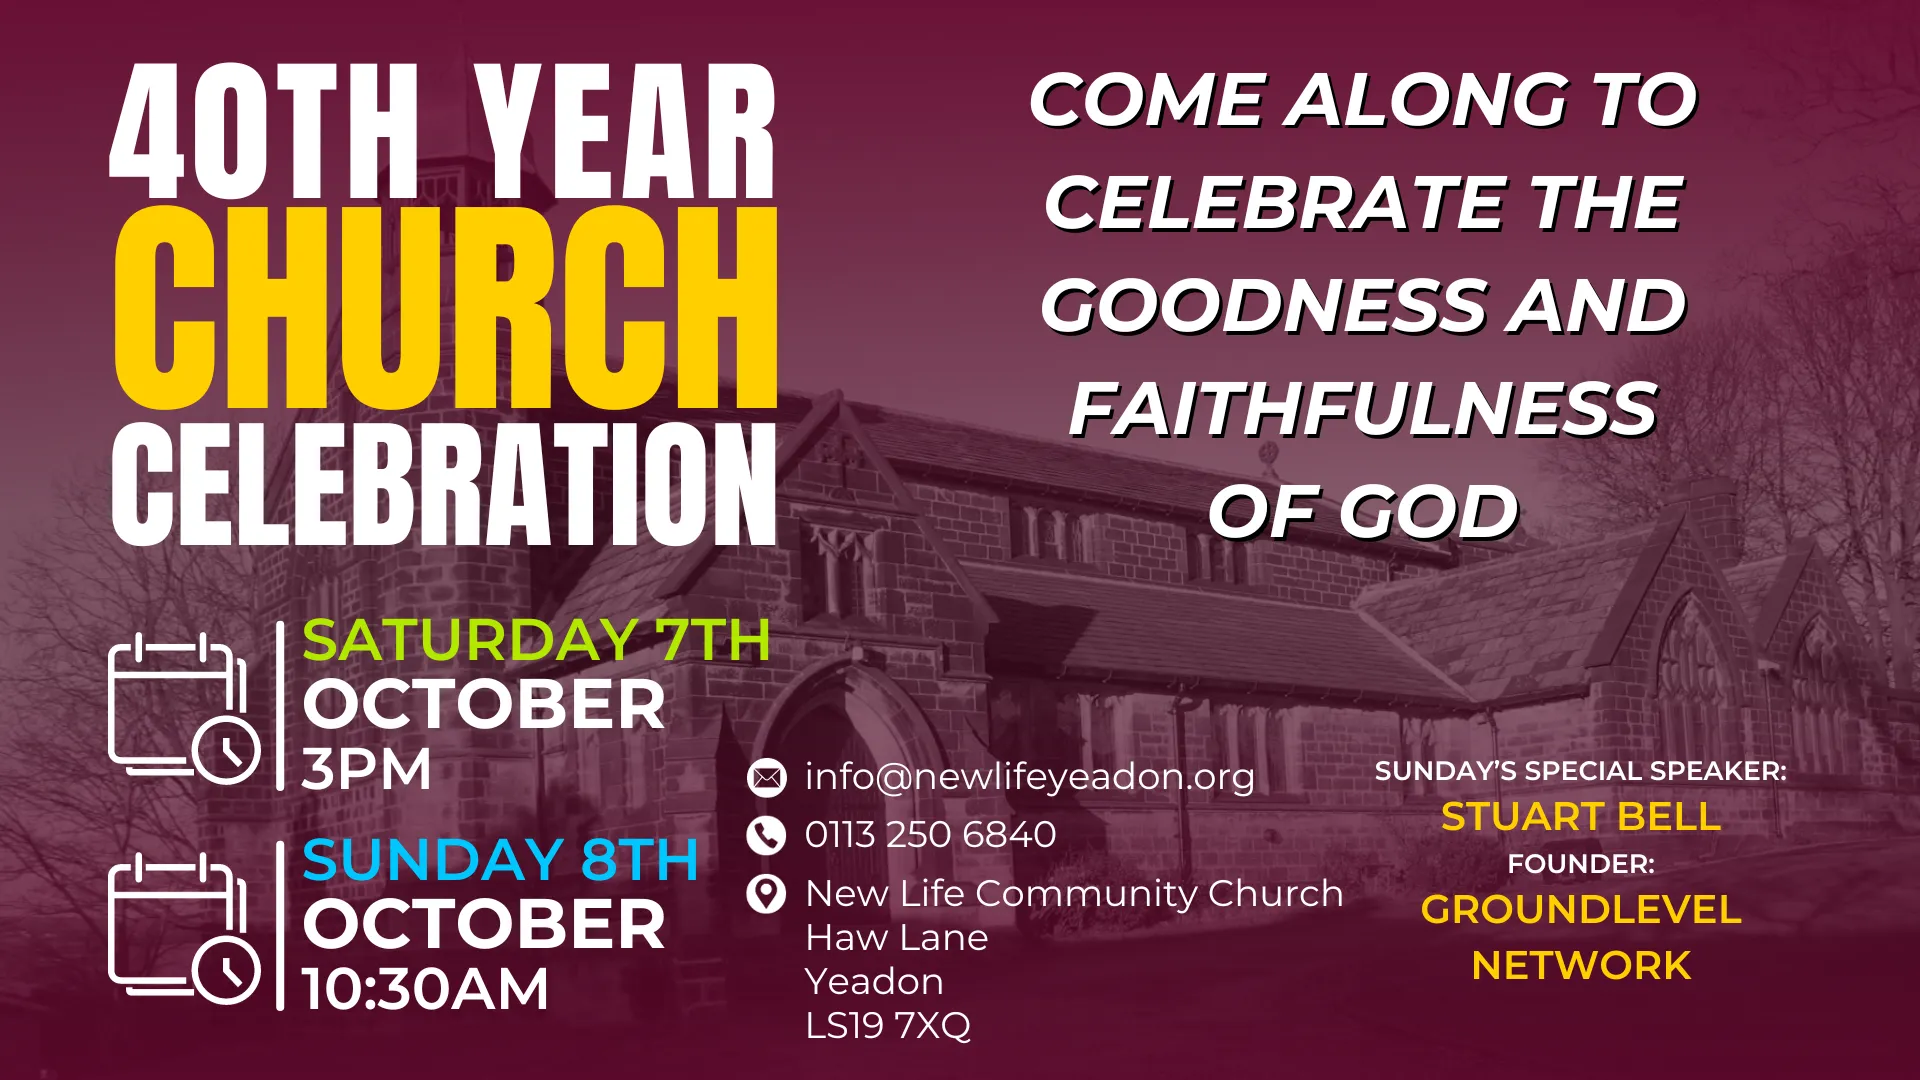 40th Year Church Celebration